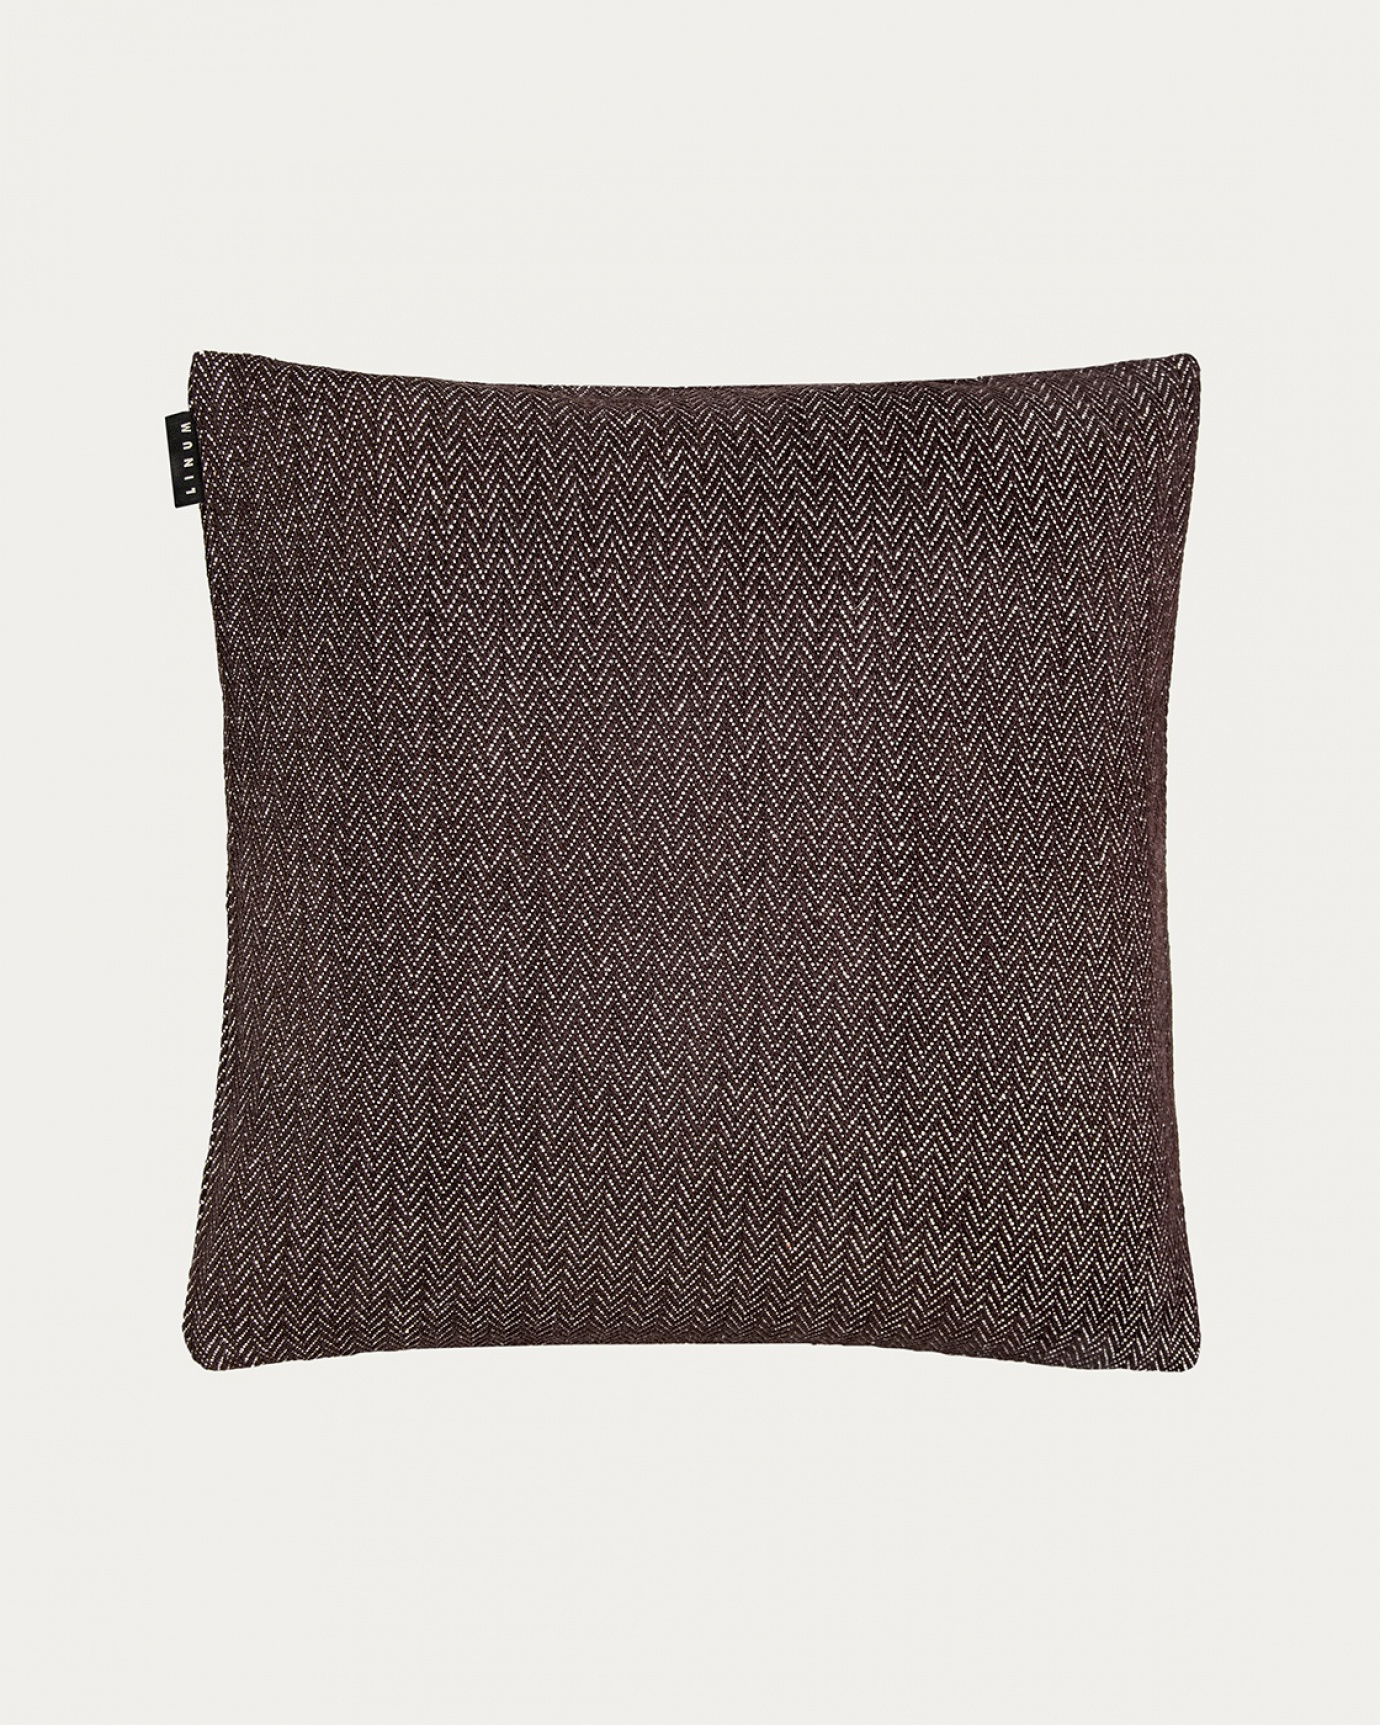 Produktbild dunkelbraun SHEPARD Kissenhülle aus weicher Baumwolle mit dezentem Fischgrätmuster von LINUM DESIGN. Größe 50x50 cm.